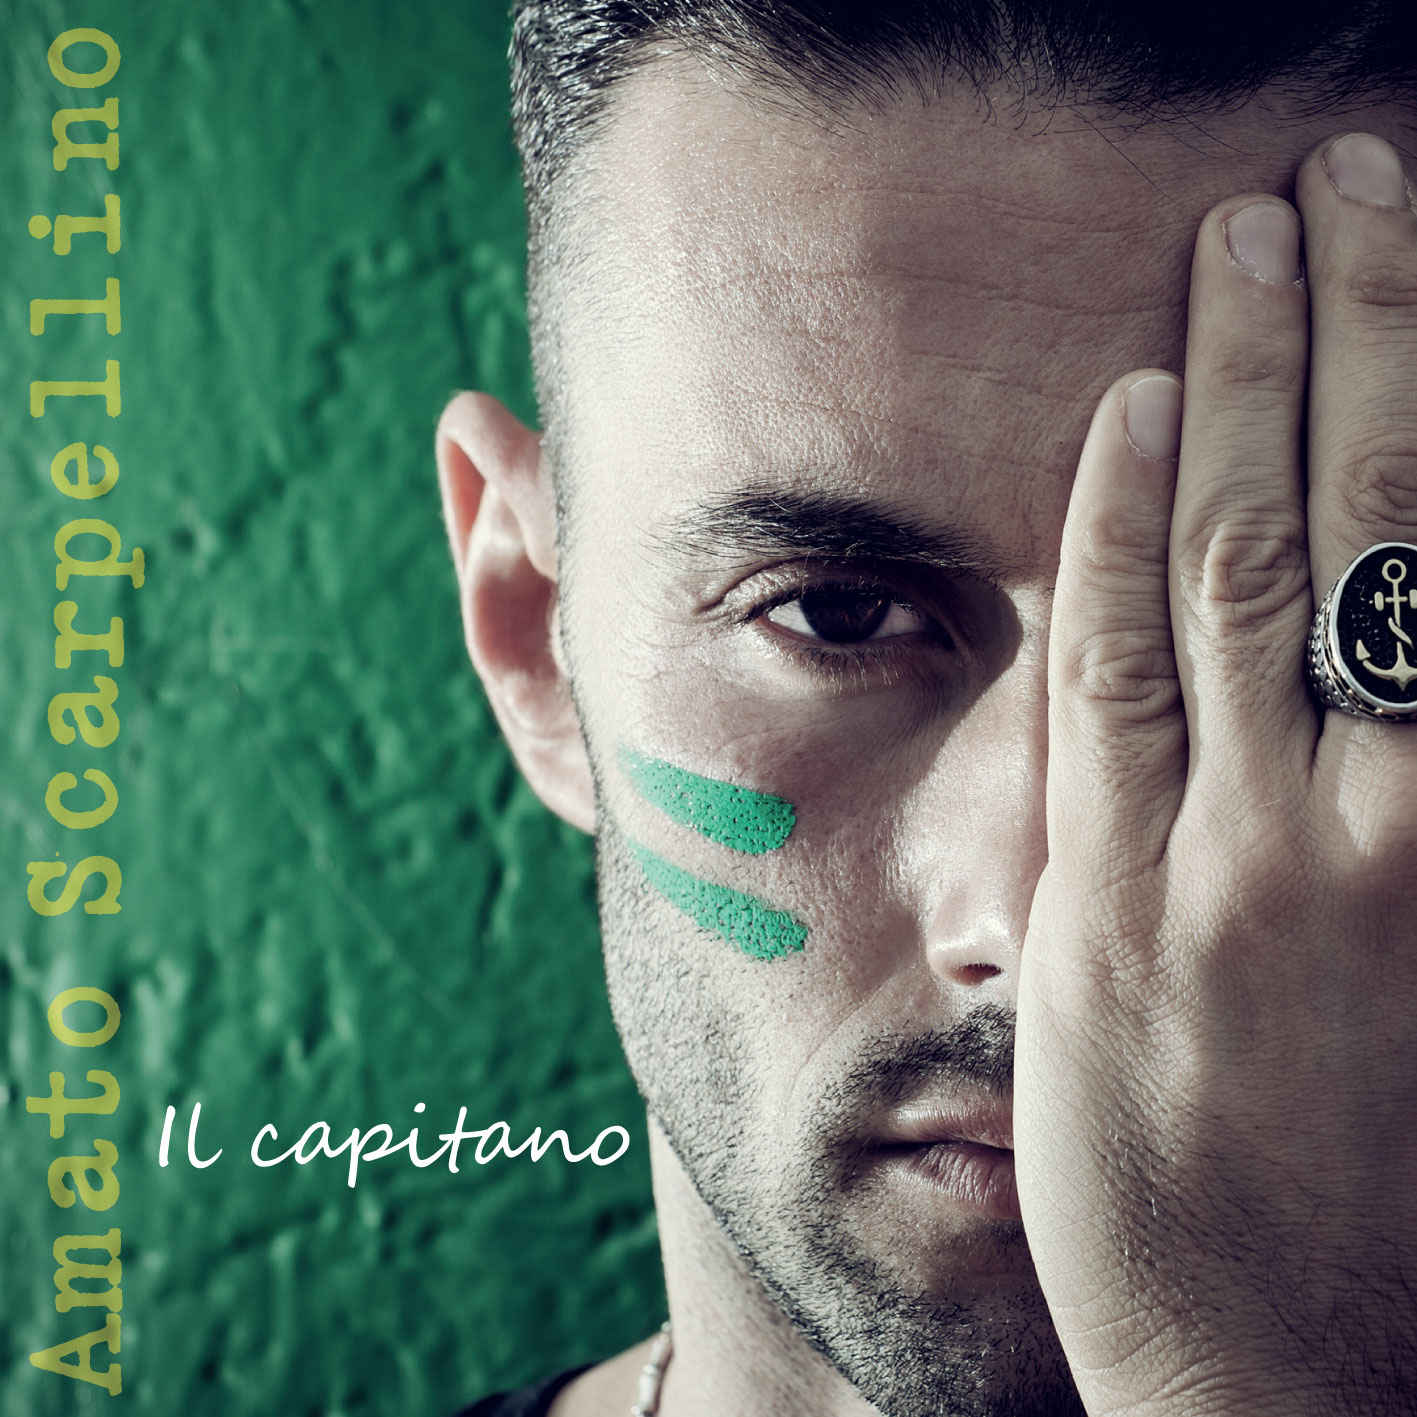  “Il capitano”, il nuovo lavoro discografico di Amato Scarpellino